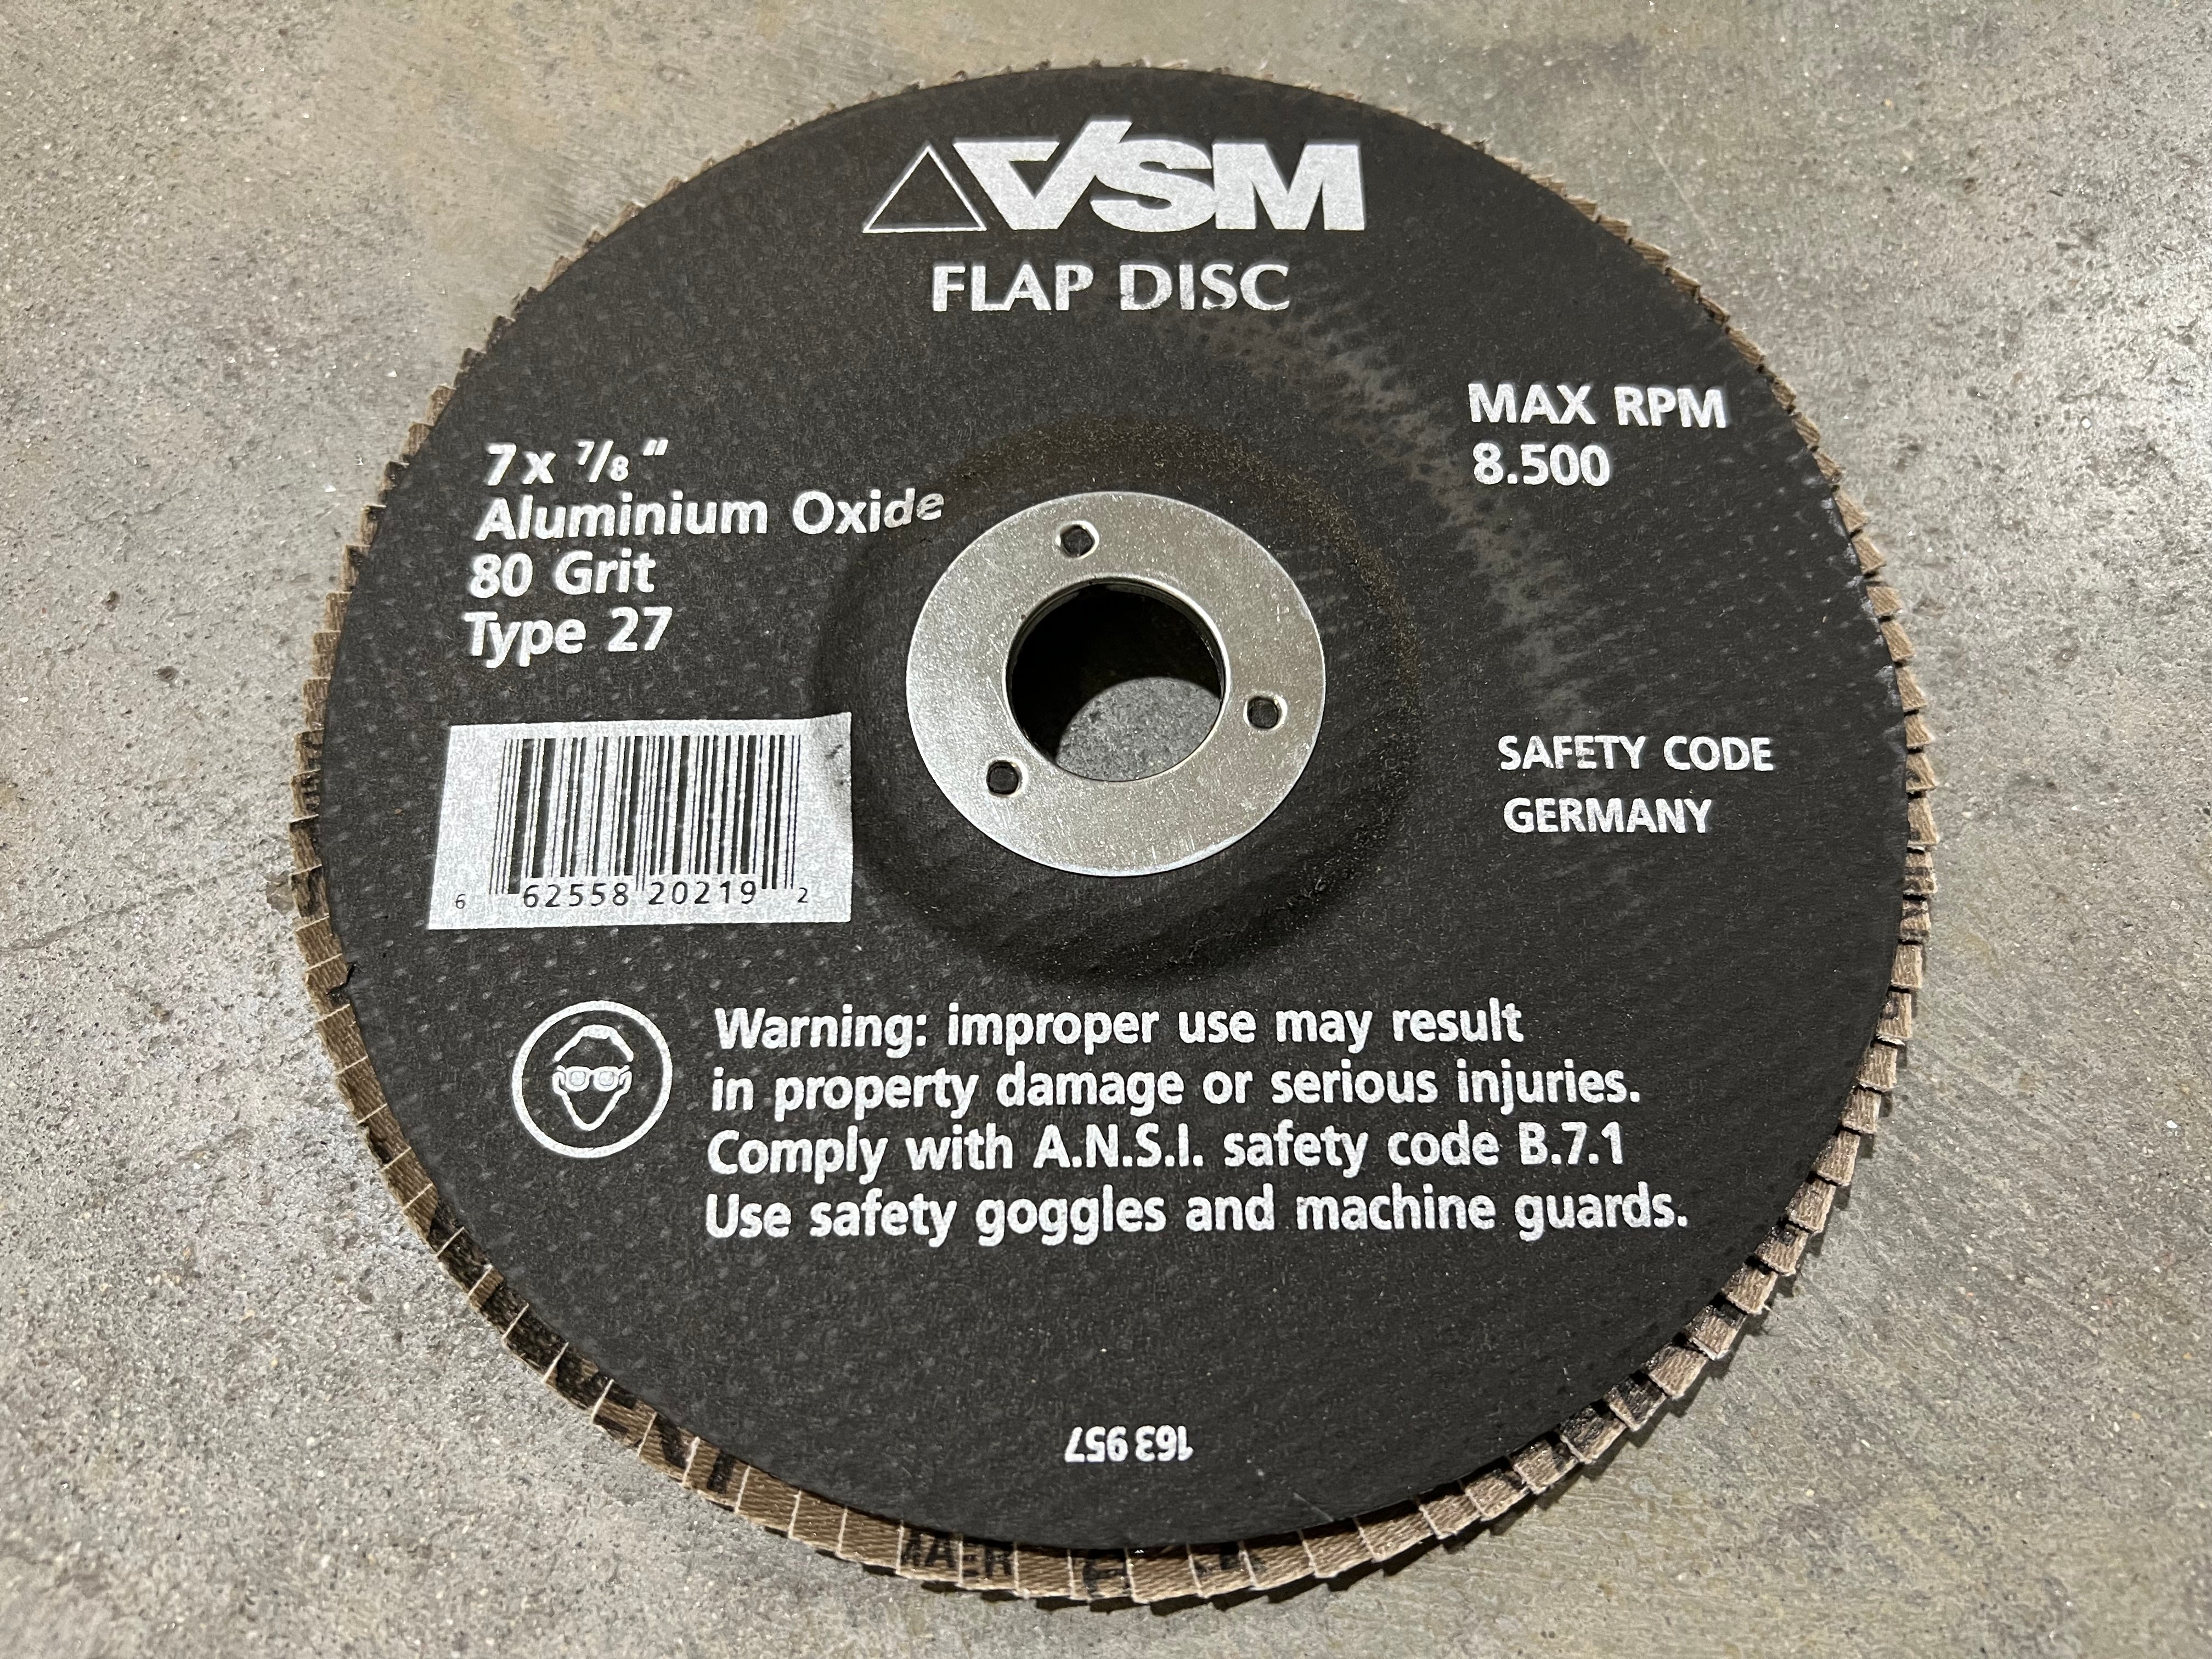 VSM 163 957 Flap Disc 7 x 7/8" Aluminum Oxide 80 Grit Type 27